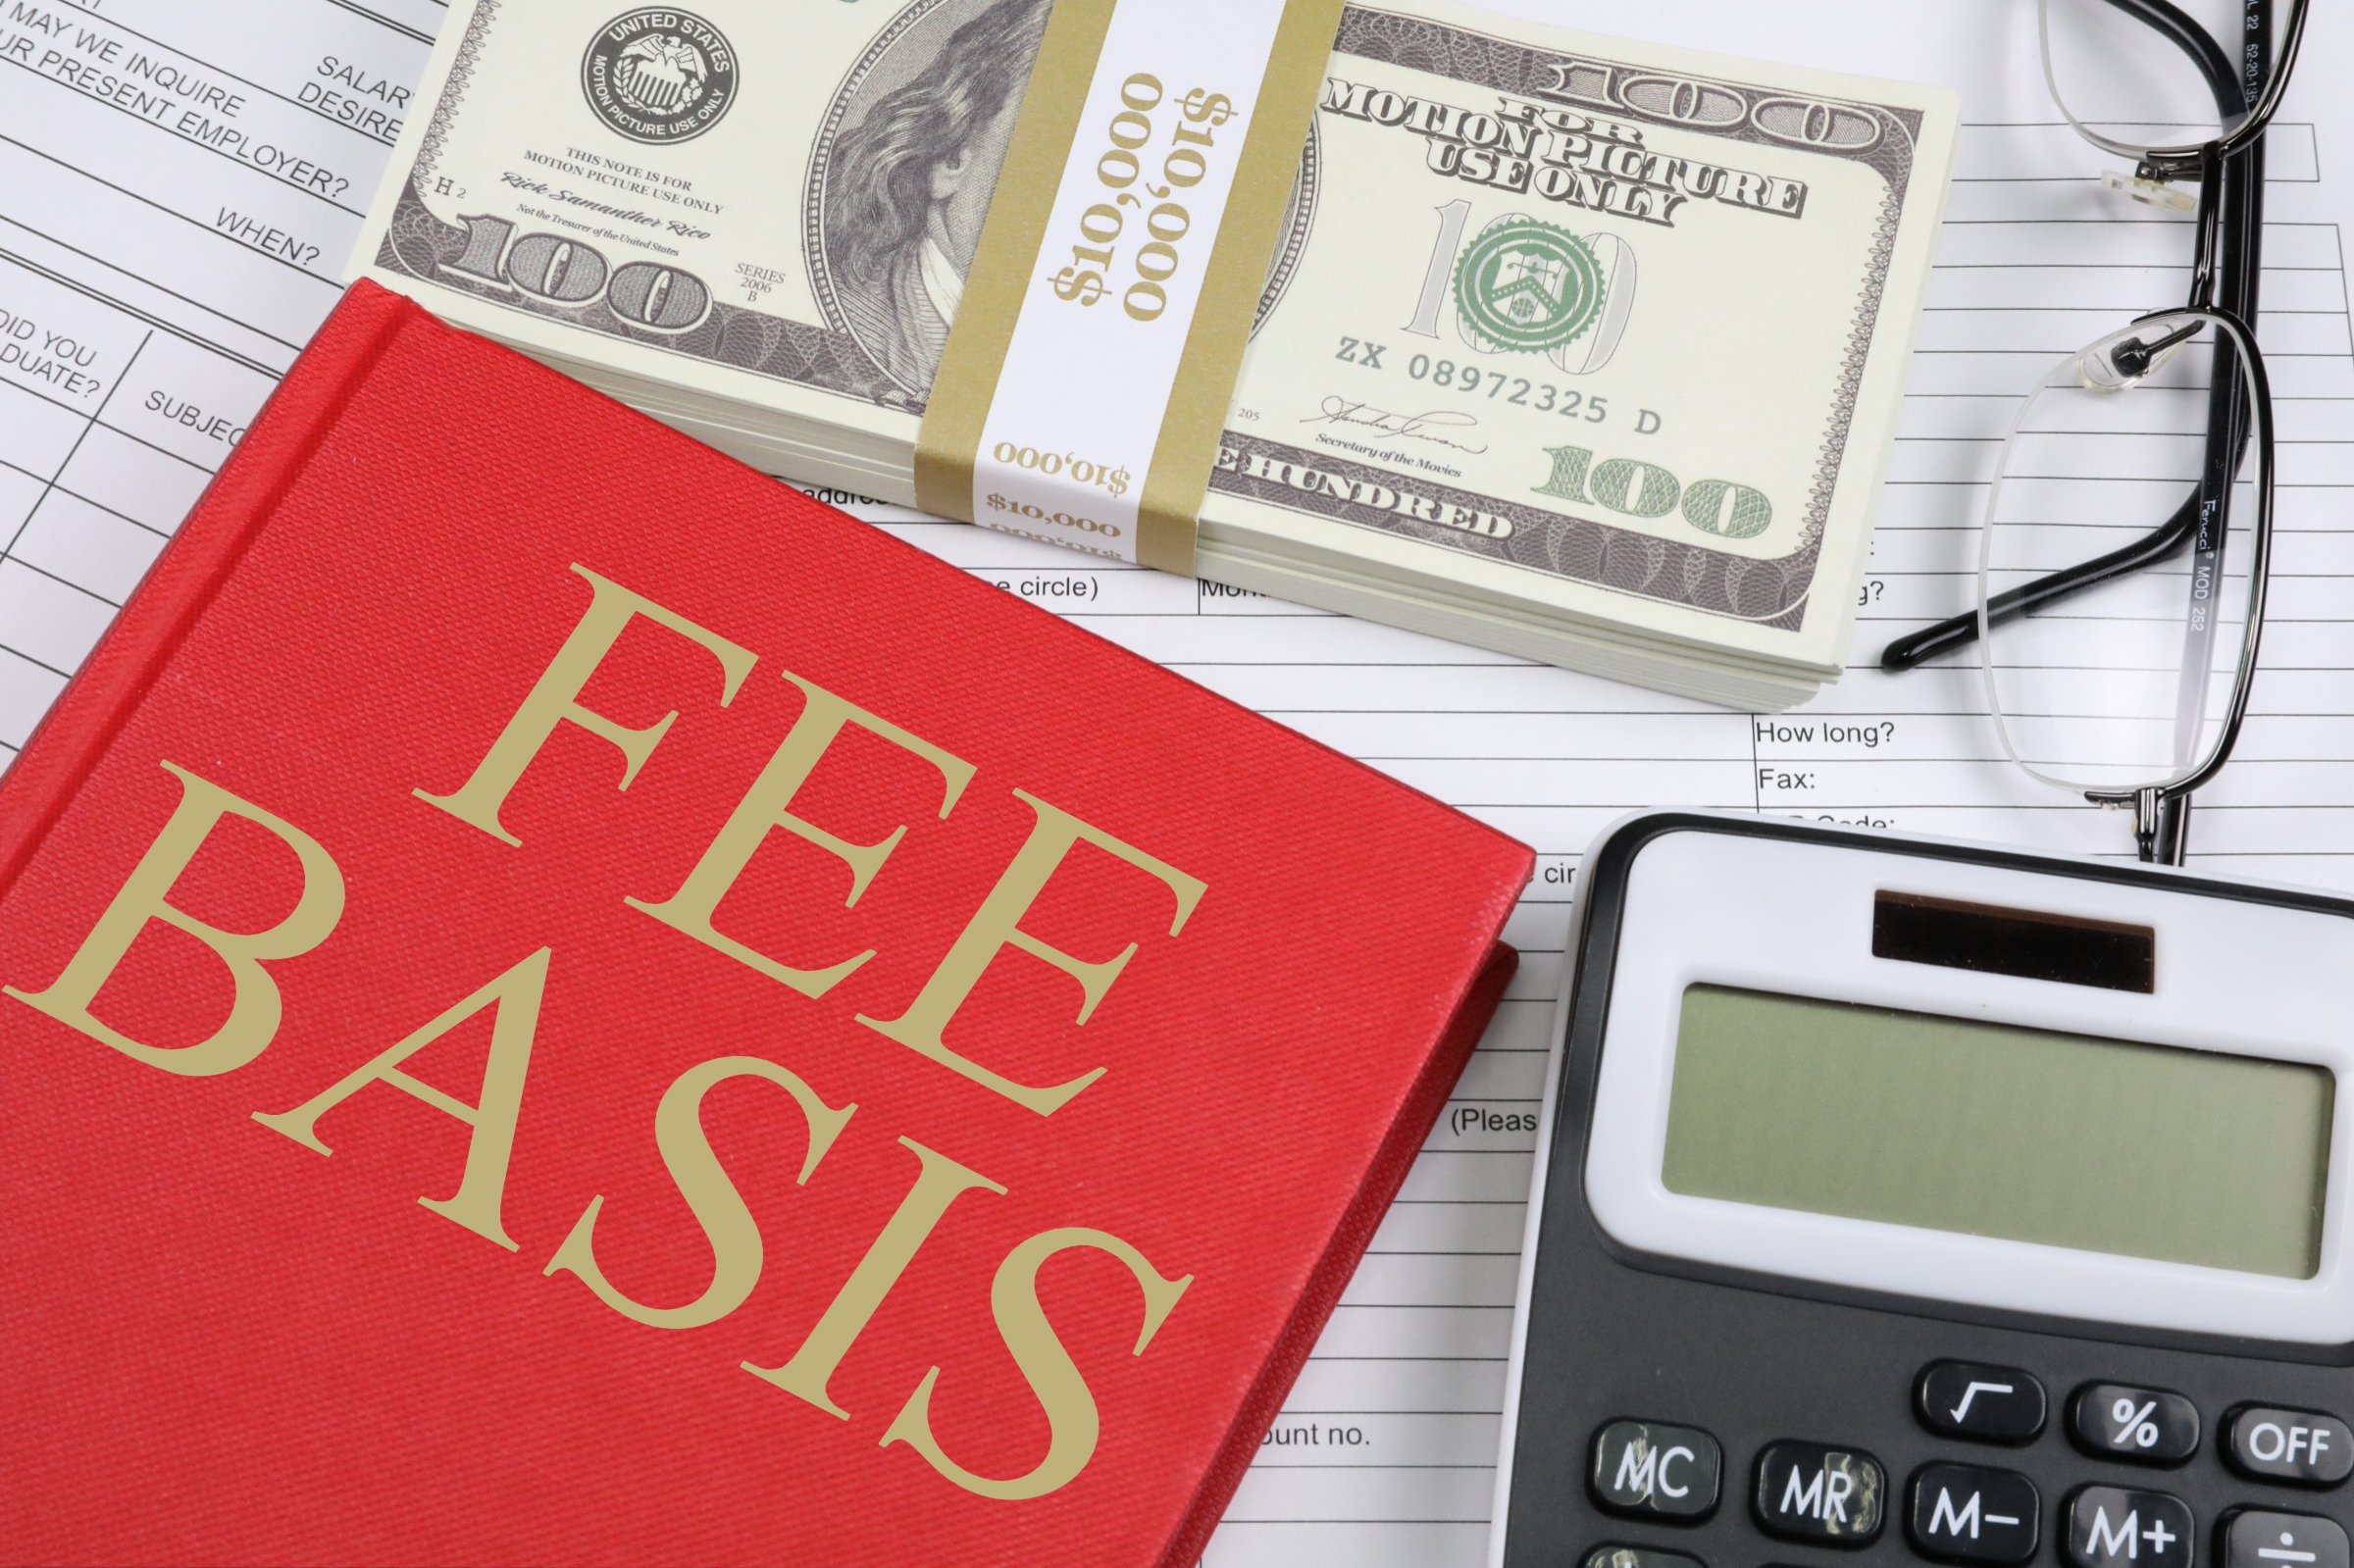 fee basis